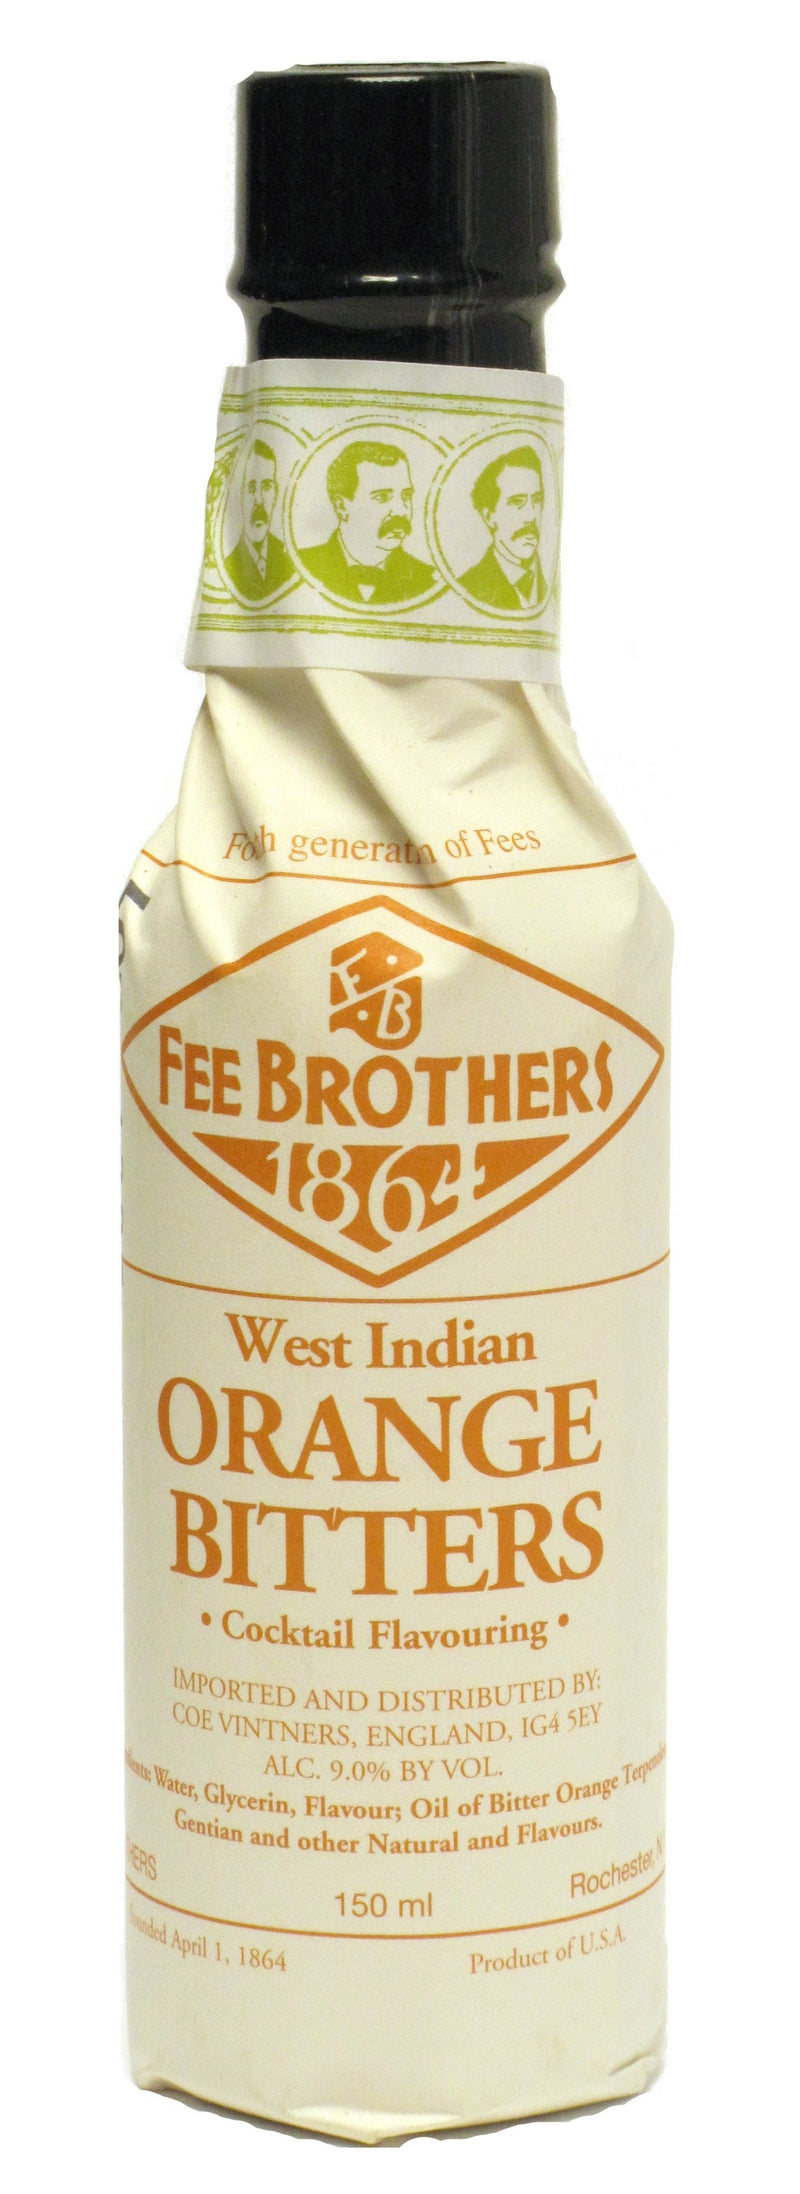 Fee Brothers Orange Bitters 35.8% 150ml